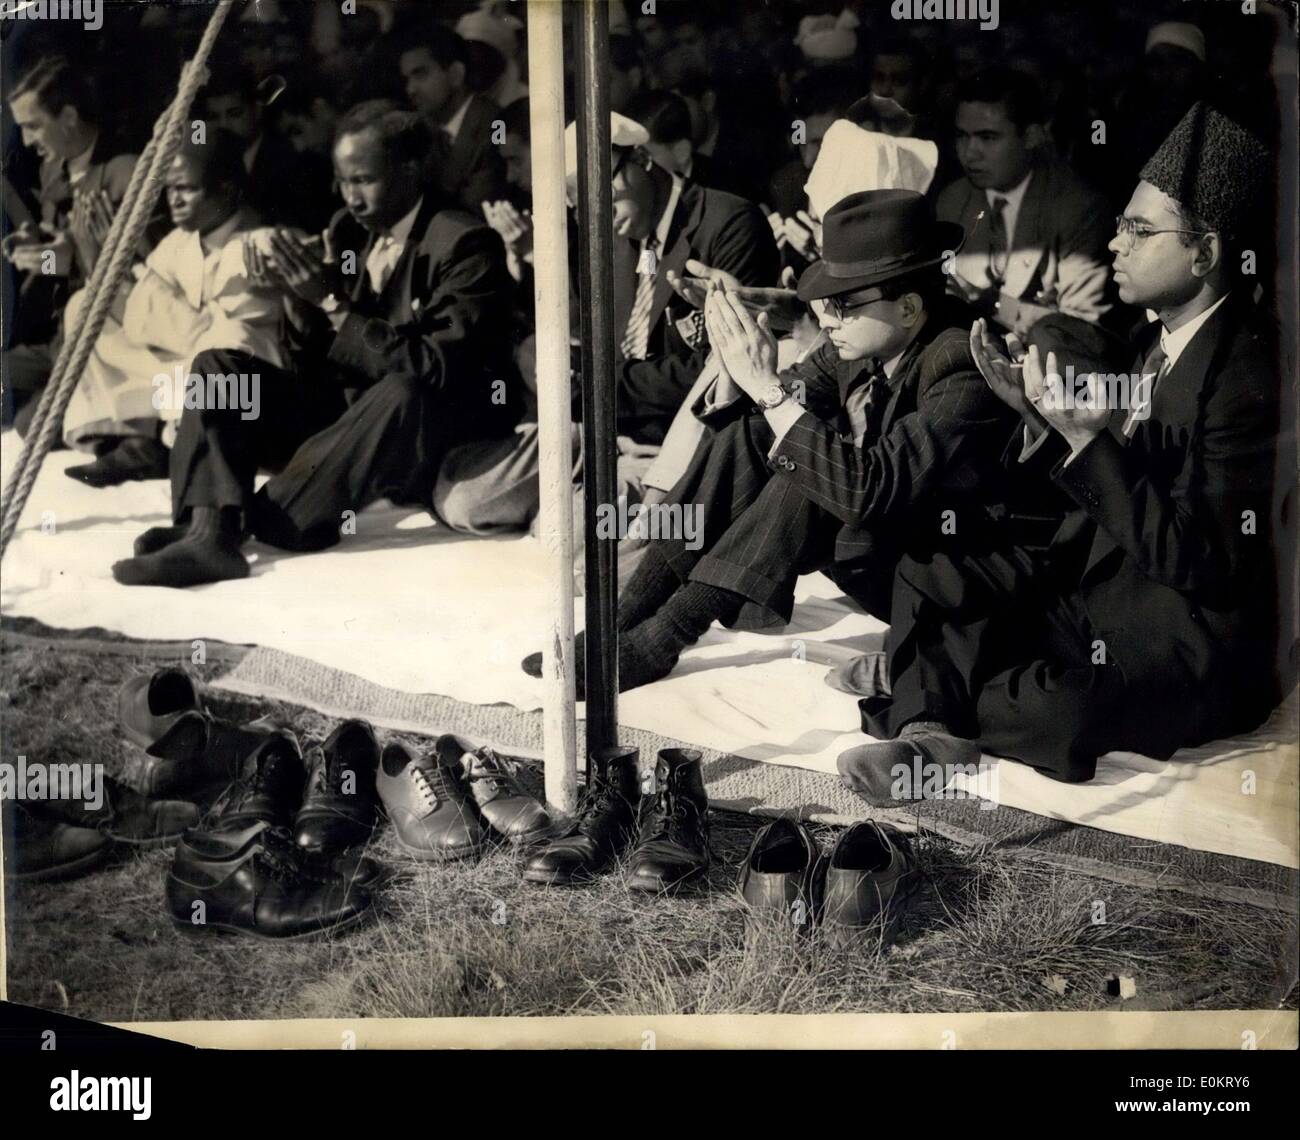 3. Oktober 1949 - feiern -l-Adha Musselin Festival in Woking: Musselin Festival -Wl-Adha wurde gefeiert in der Shah Jehan Moschee, Woking heute. Moslems auf der ganzen Welt feiern mit Gebet, das Opfer eines Widders, gefolgt von einem fest. Foto zeigt die Szene während der Gebete in Woking Moschee heute zeigt die gefütterte Schuhe draußen. Stockfoto